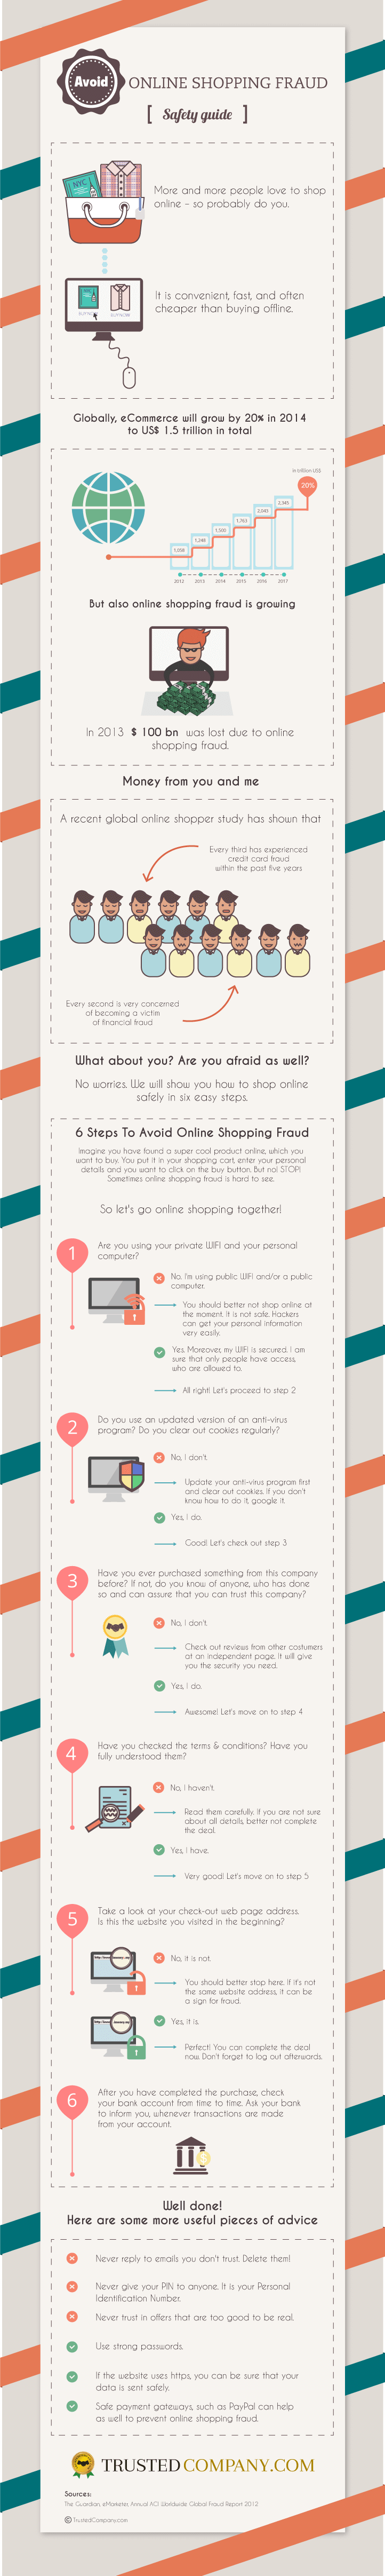 Online Shopping Fraud